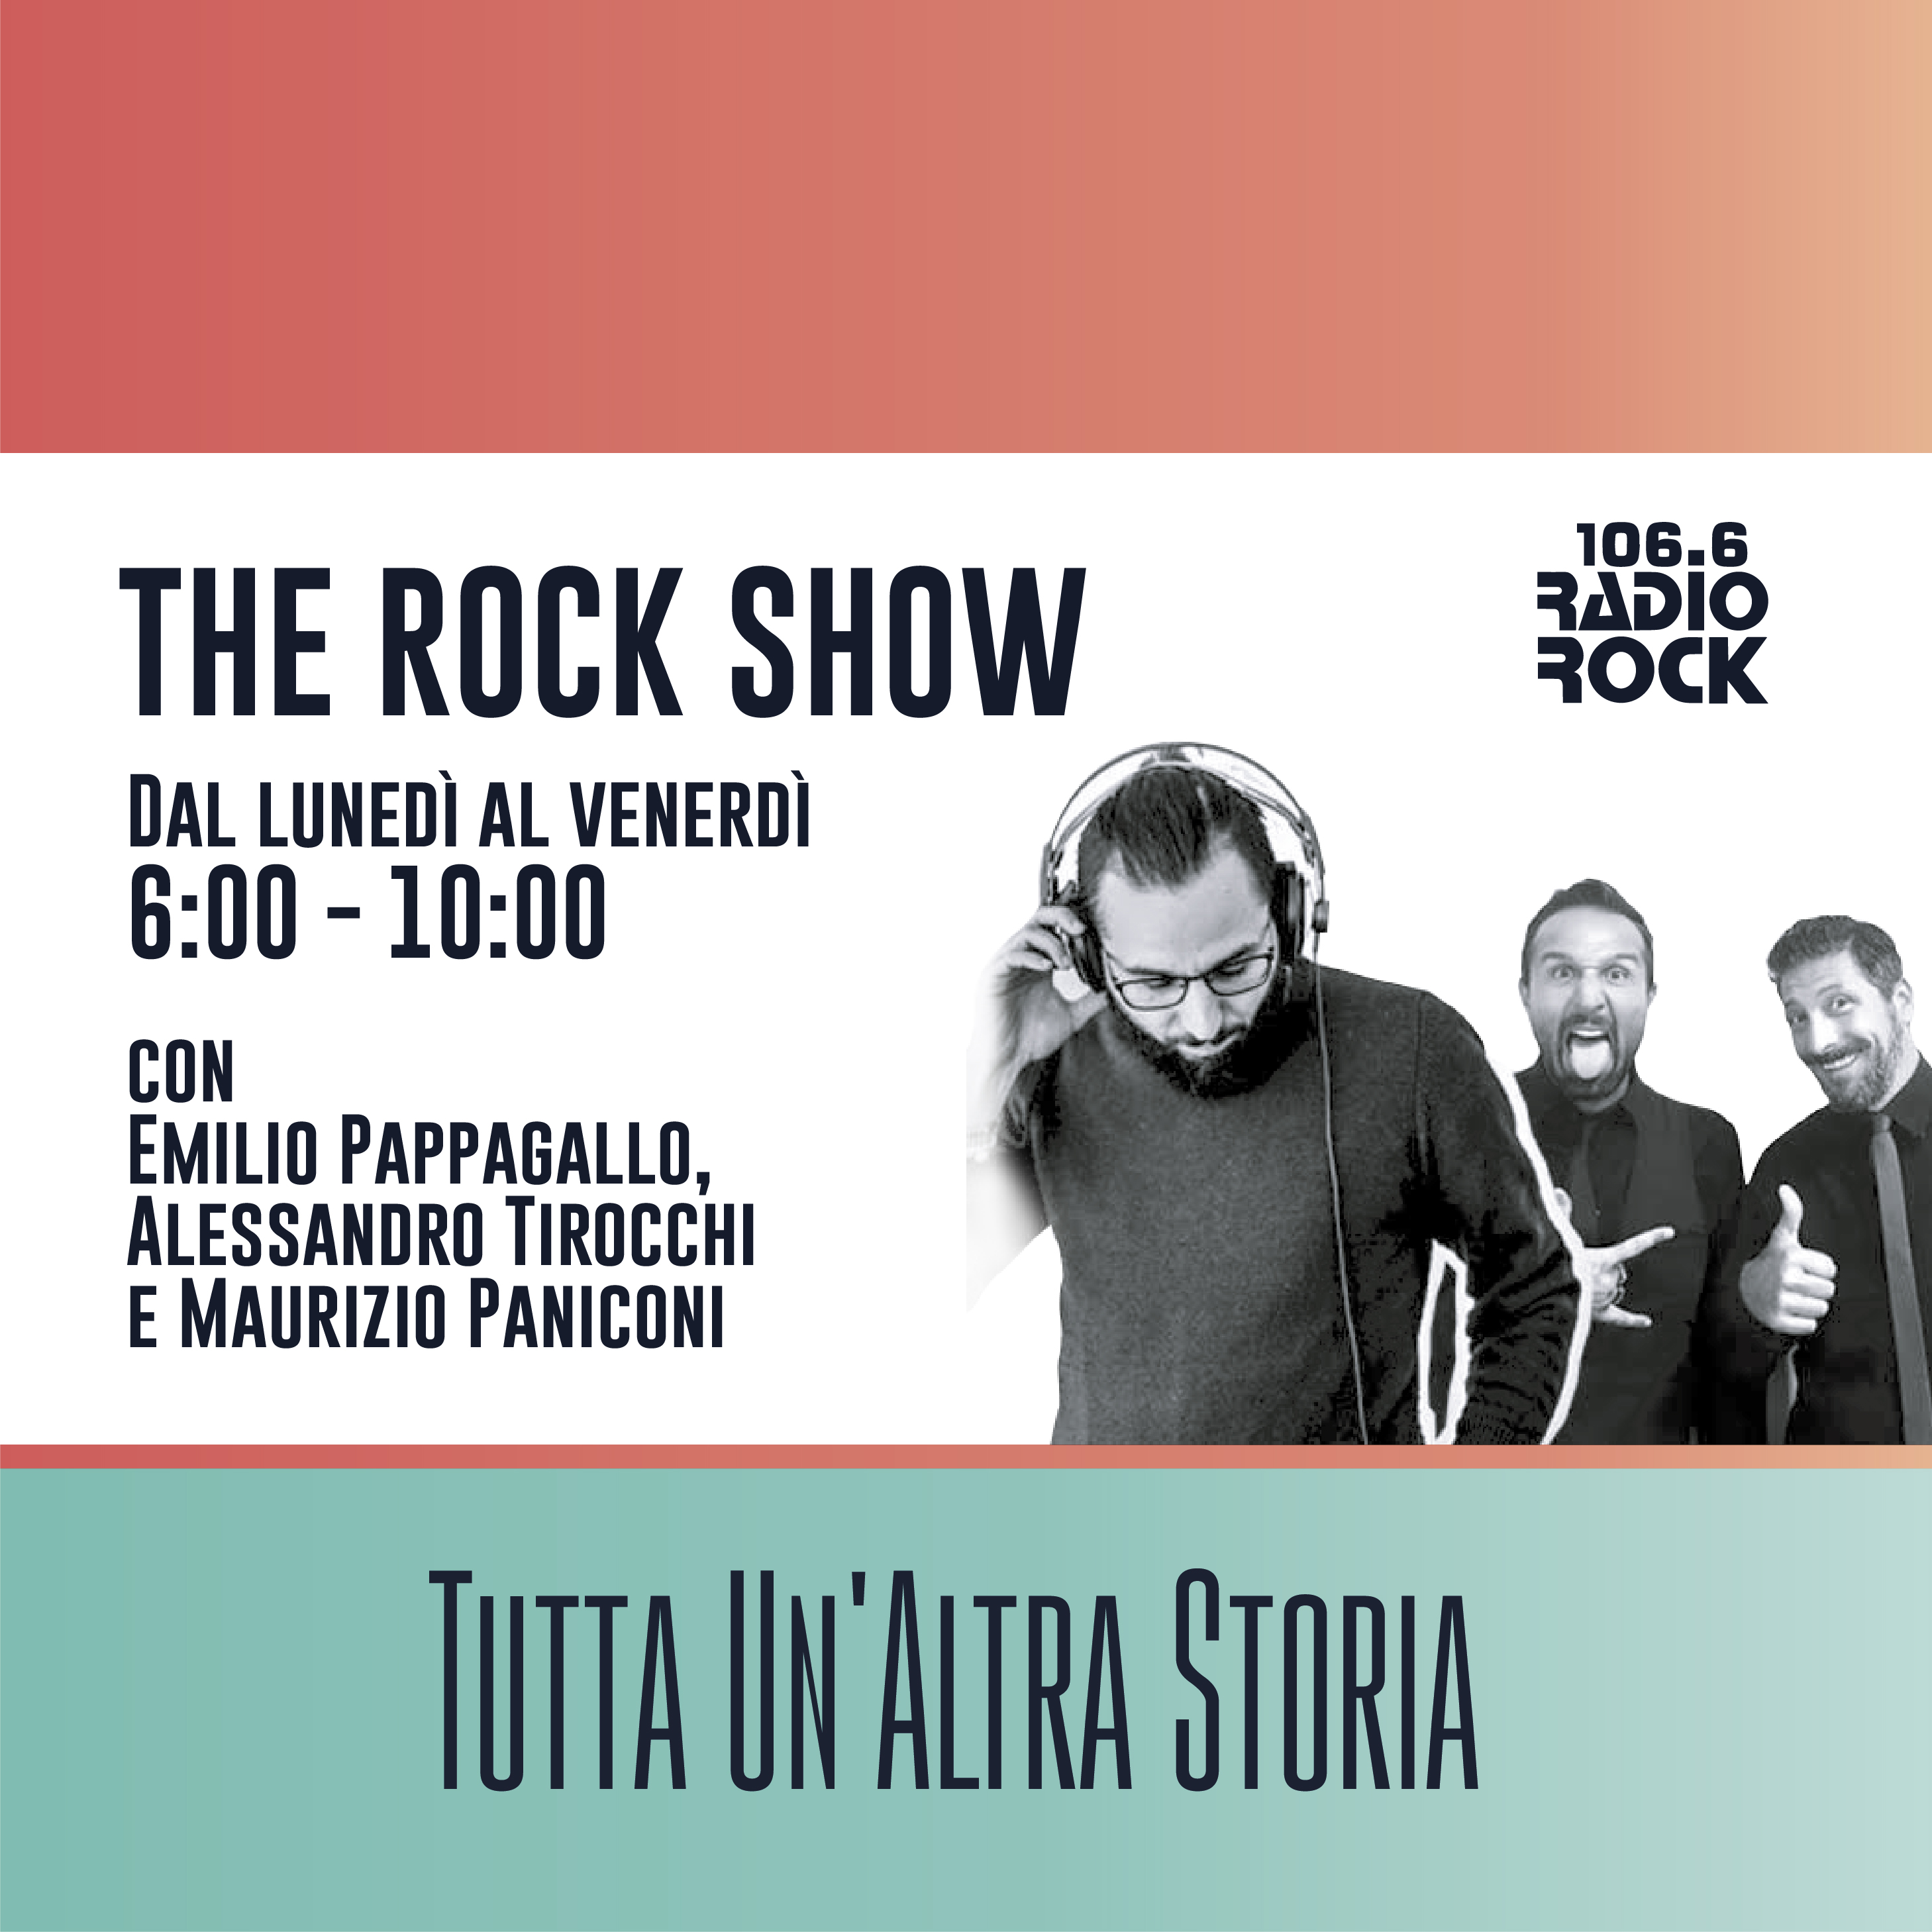 The Rock Show: L'abbacchio (30-03-21)